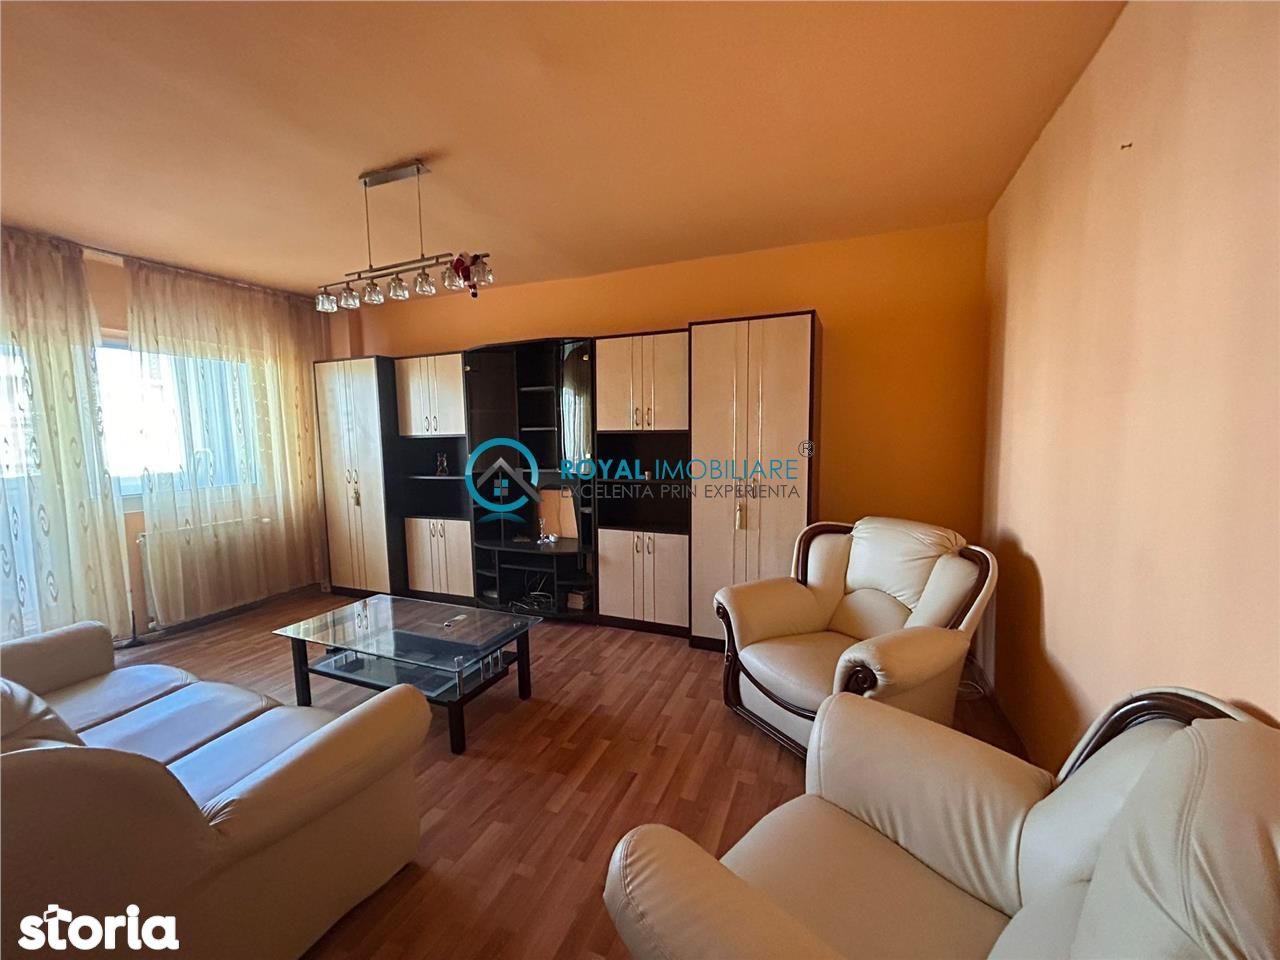 Royal Imobiliare-Vanzare Apartament 2 camere-zona Cantacuzino